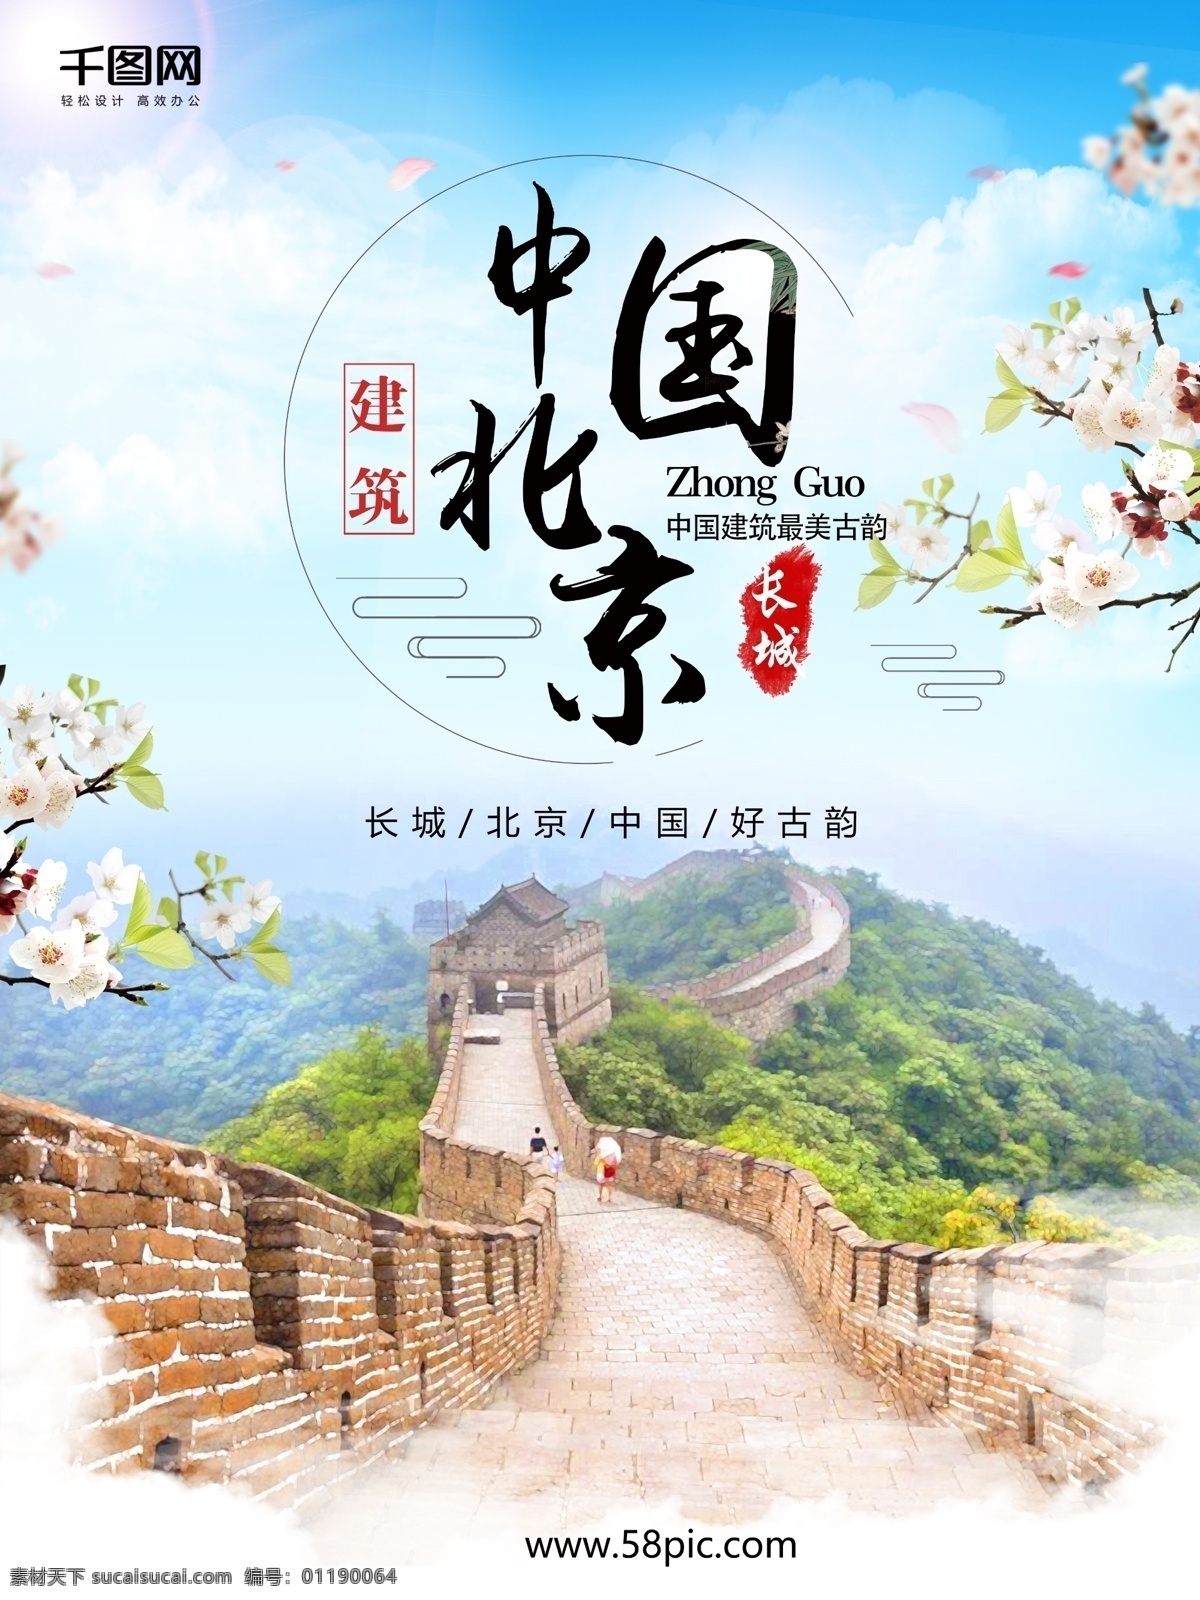 中国 北京 长城 旅游 风 水墨 山水画 海报 背景 中国风 旅游海报 万里长城 花 长城海报